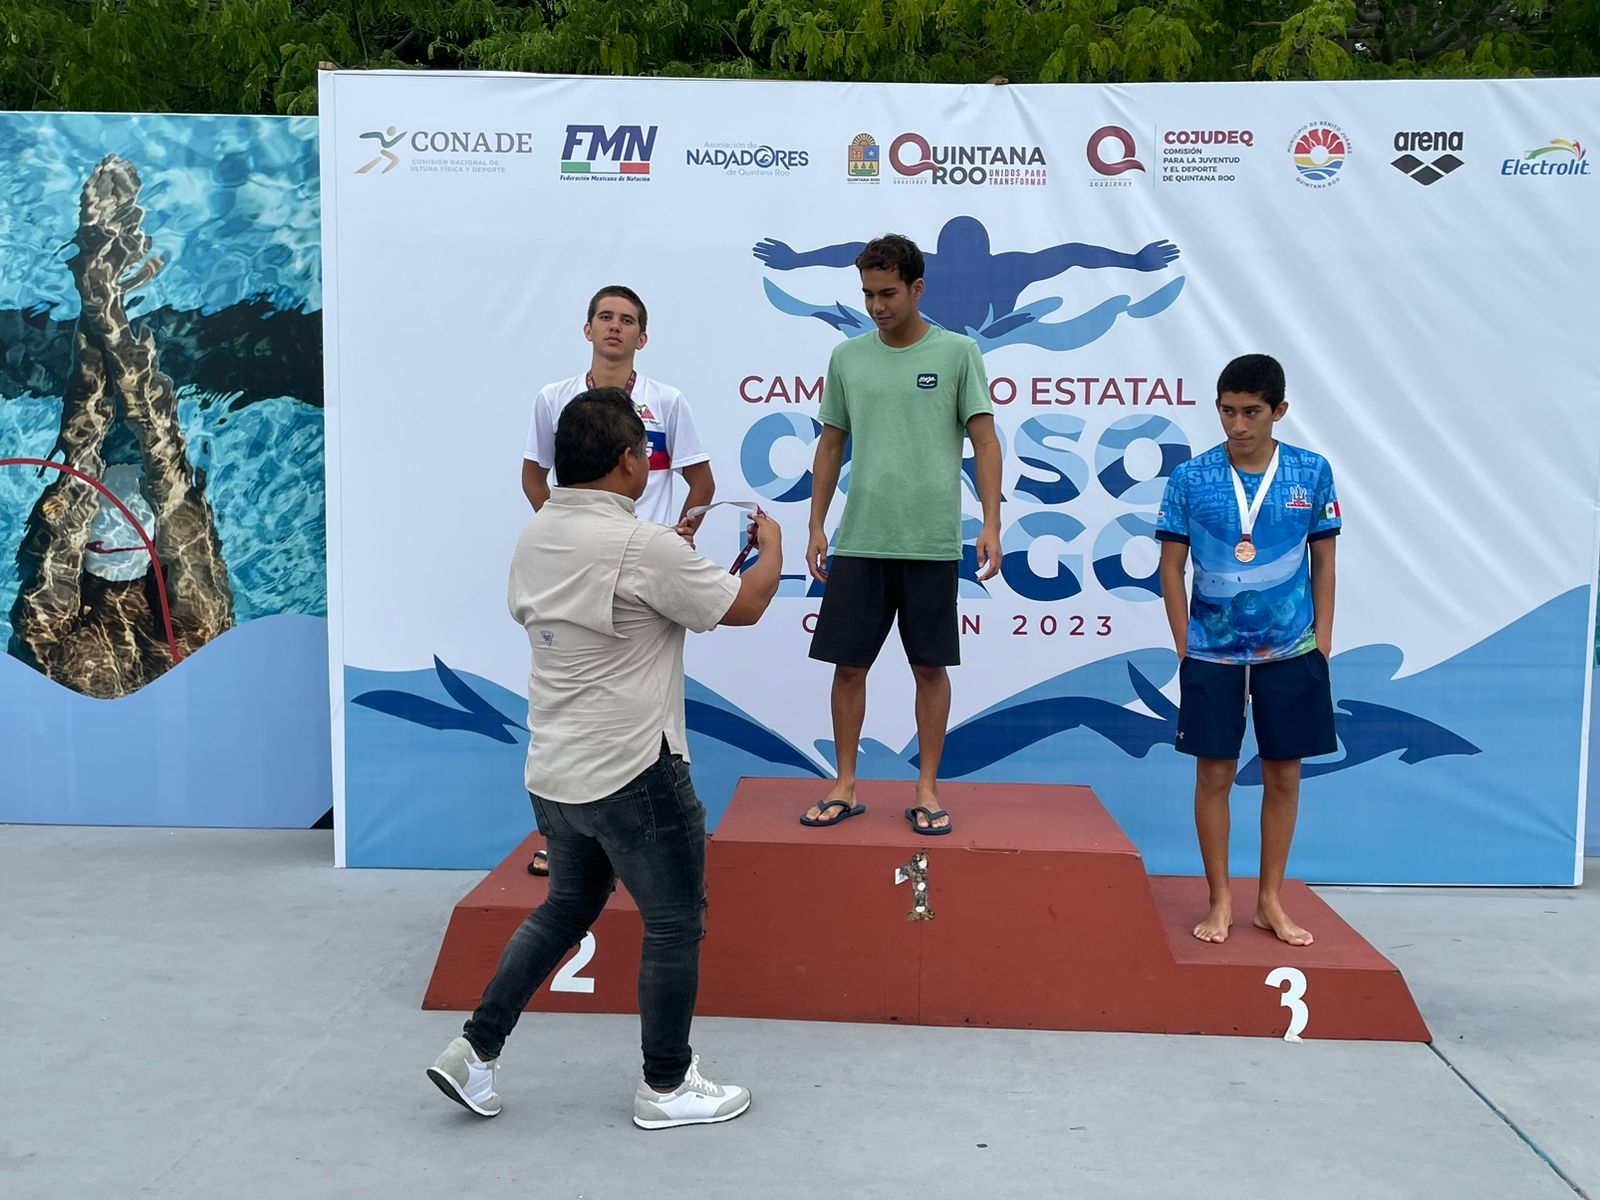 Nadadores quintanarroenses se reparten los primeros lugares del Campeonato CC Cancún 2023